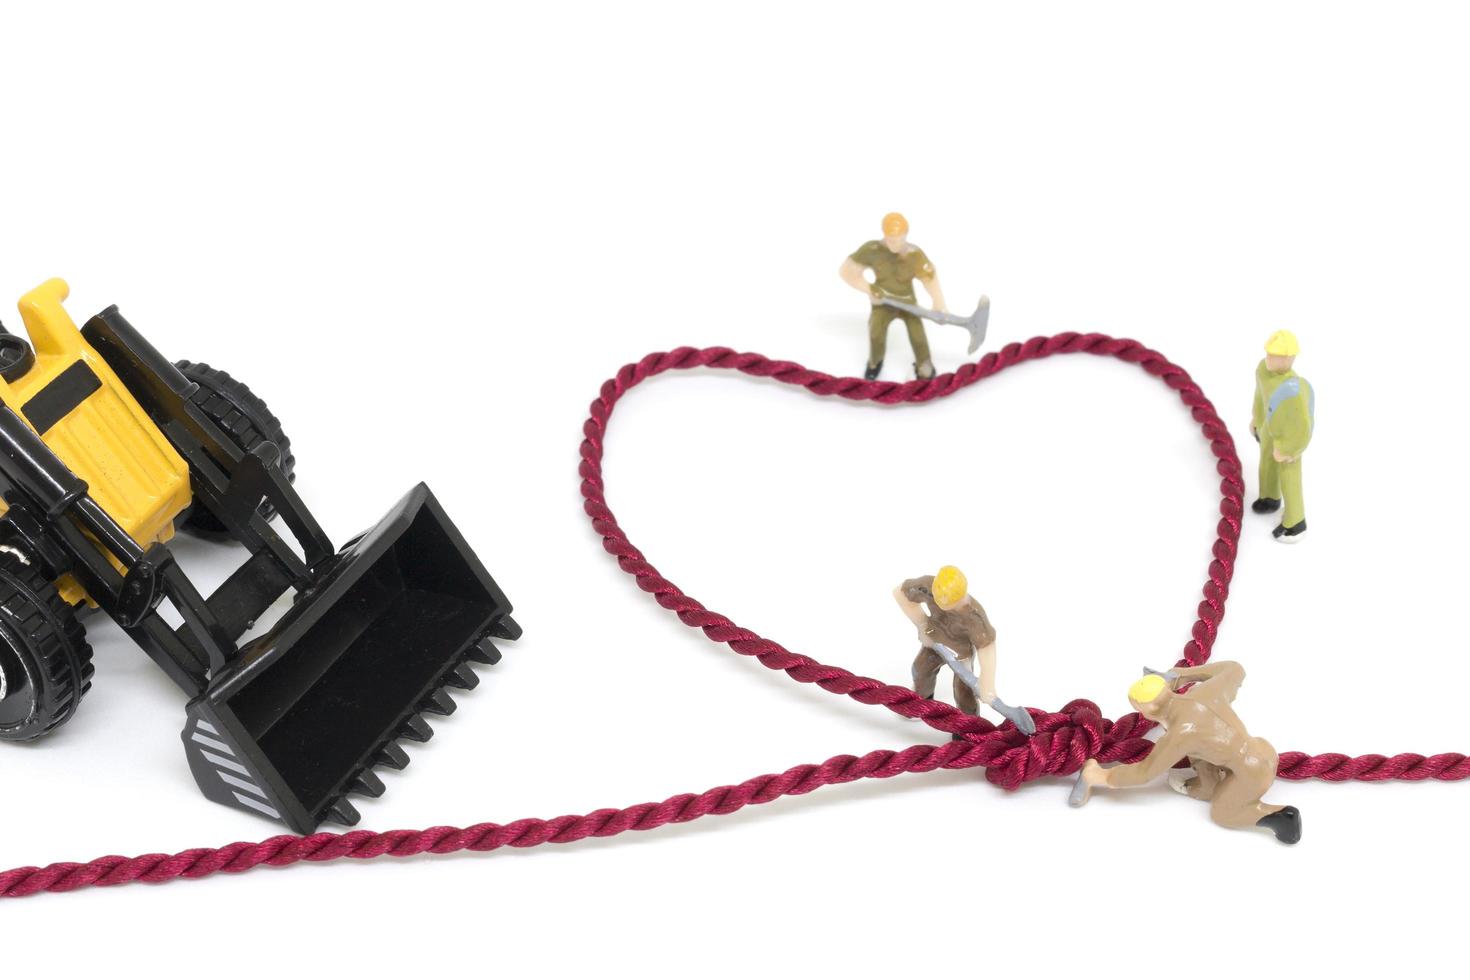 miniatuurarbeiders die een hartvormig touw bouwen op een witte achtergrond foto